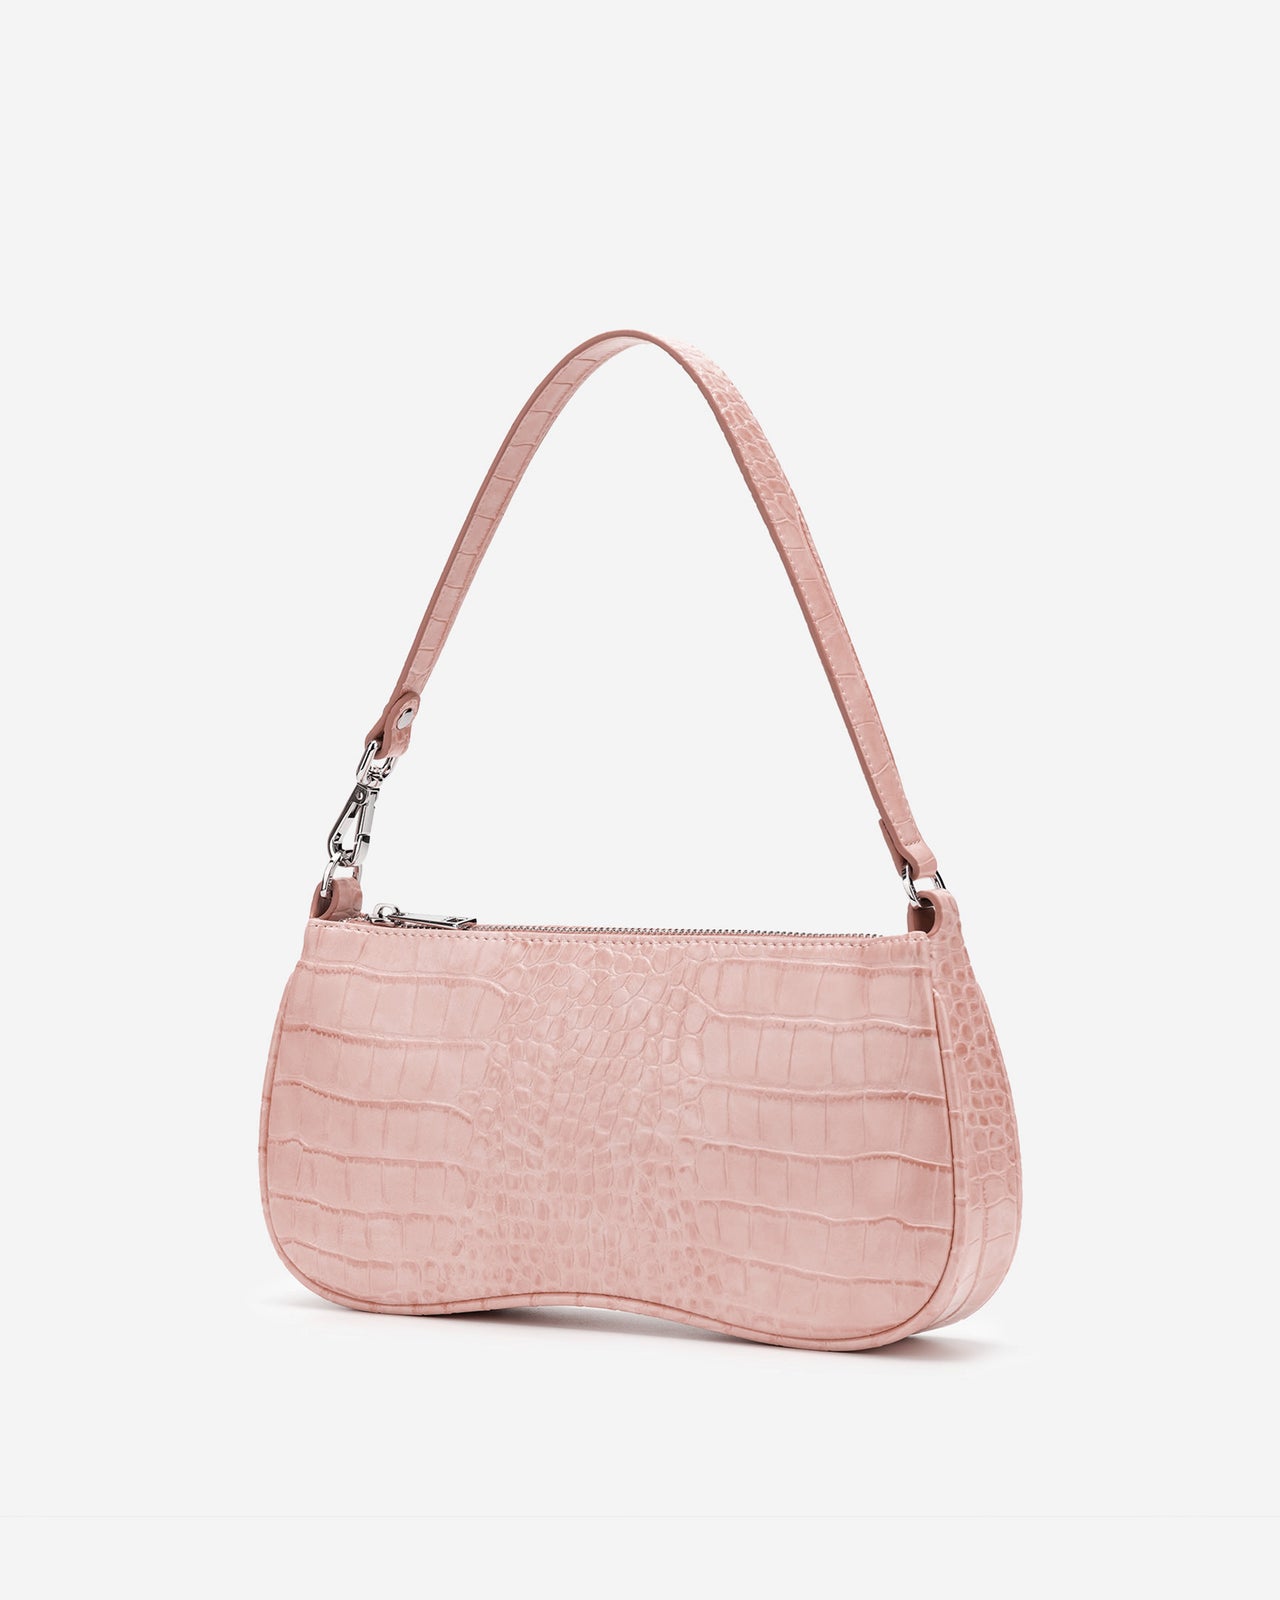 Eva Shoulder Handbag - Pink Croc